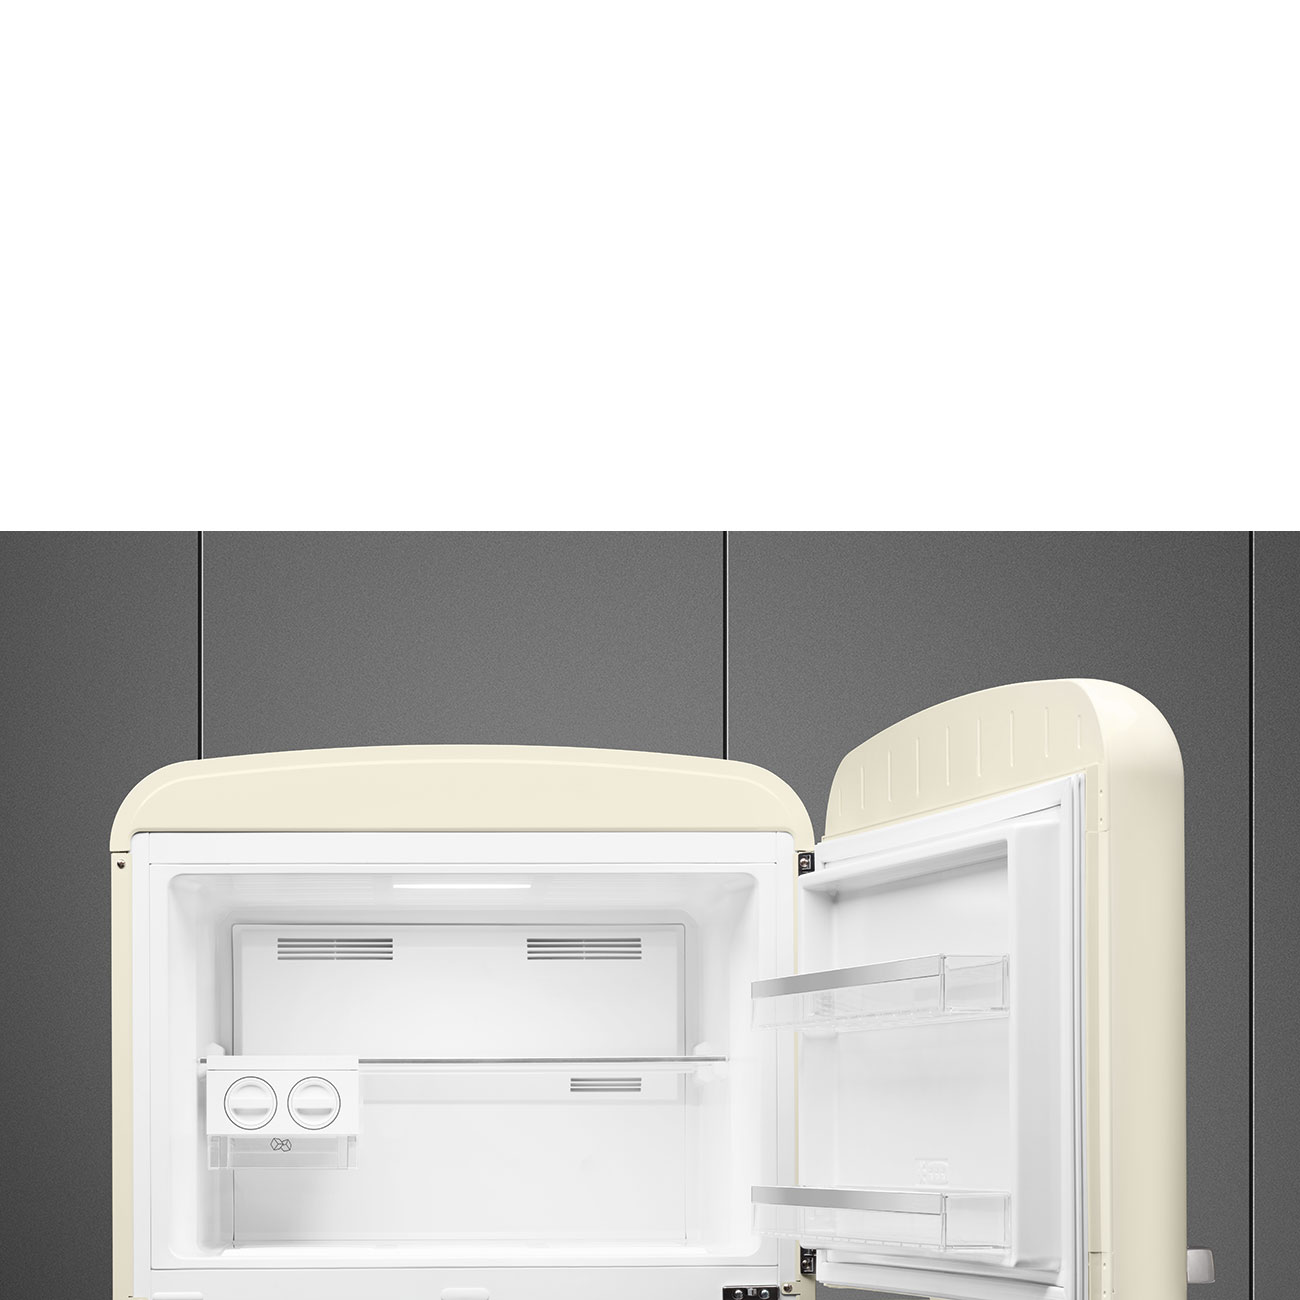 Creme Retro-Kühlschränke von Smeg_4